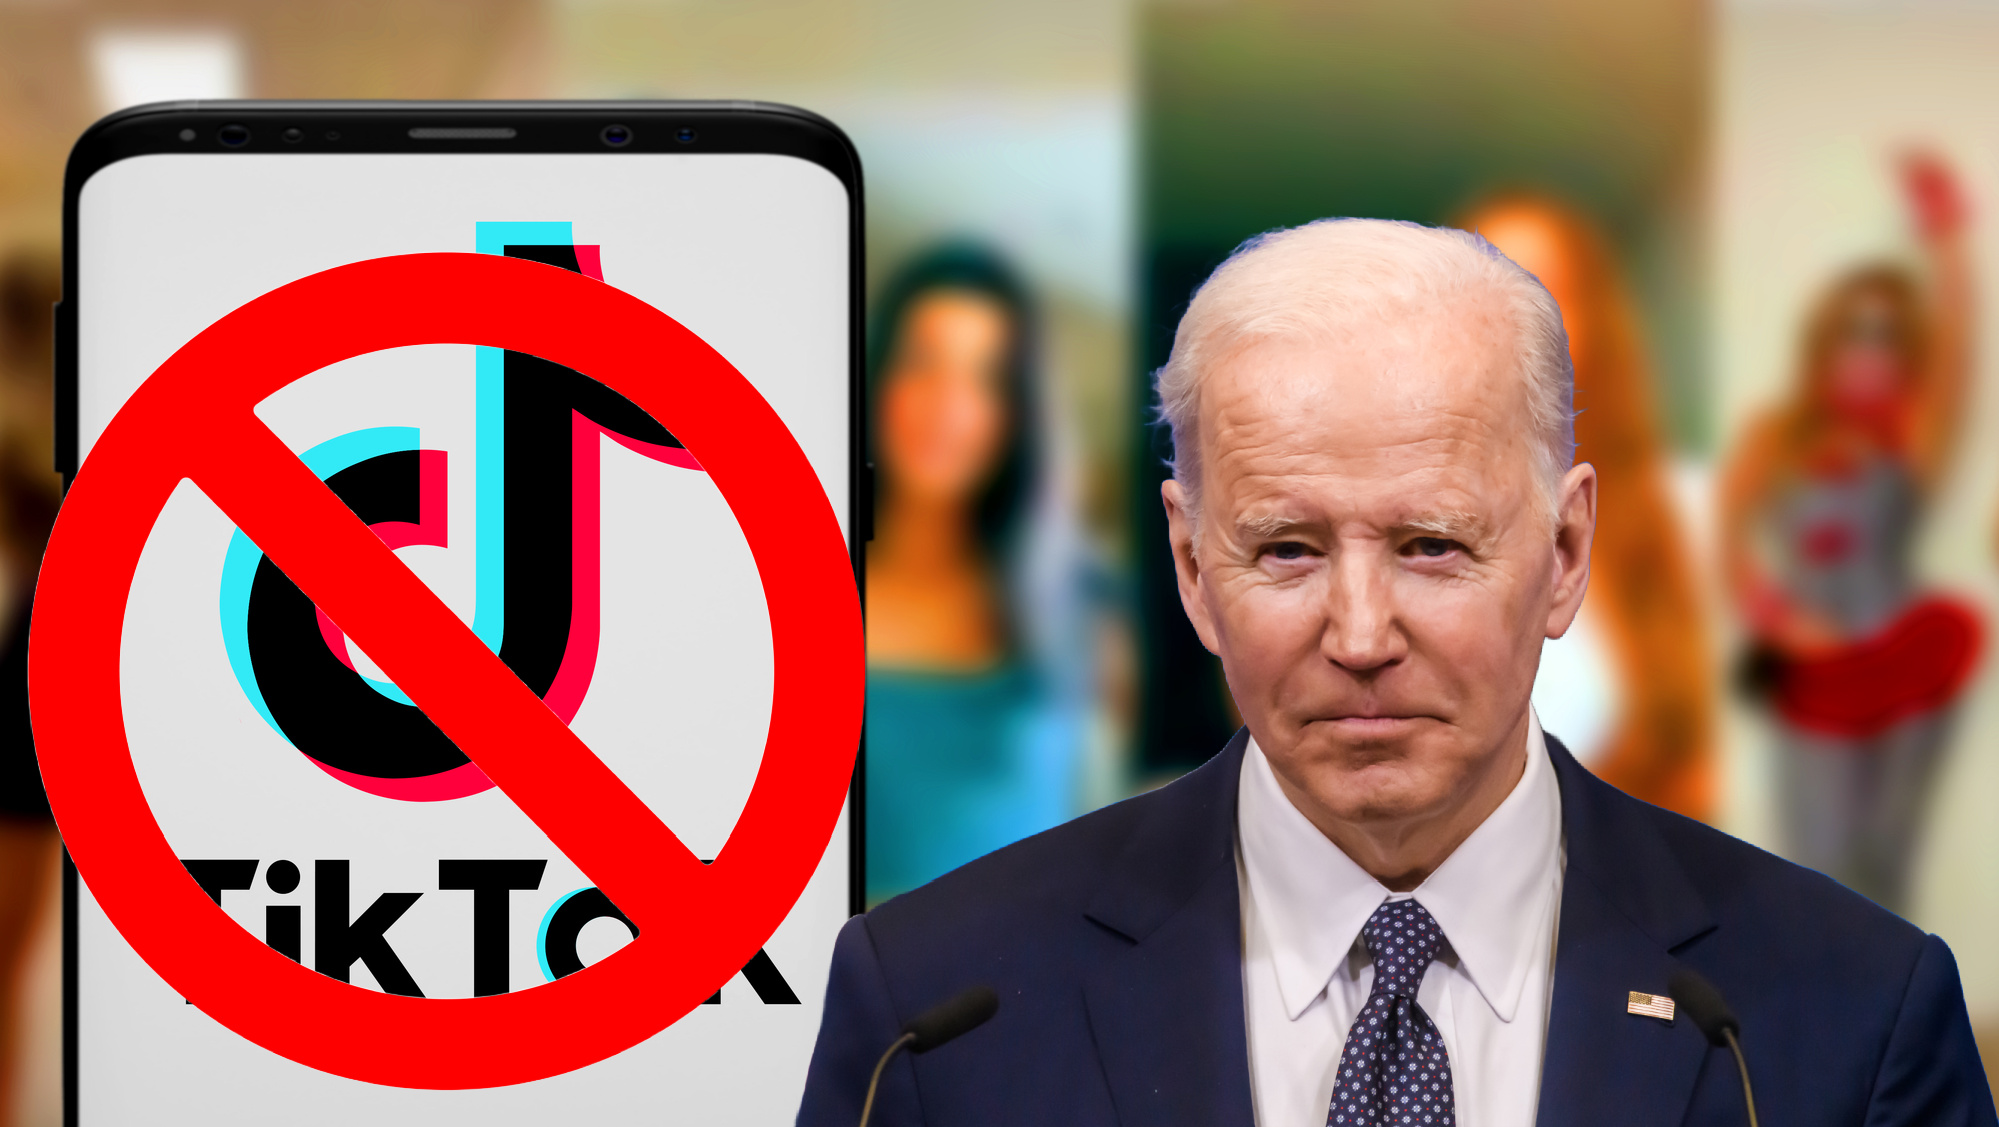 President Biden Has Just Signed The Bill Banning TikTok